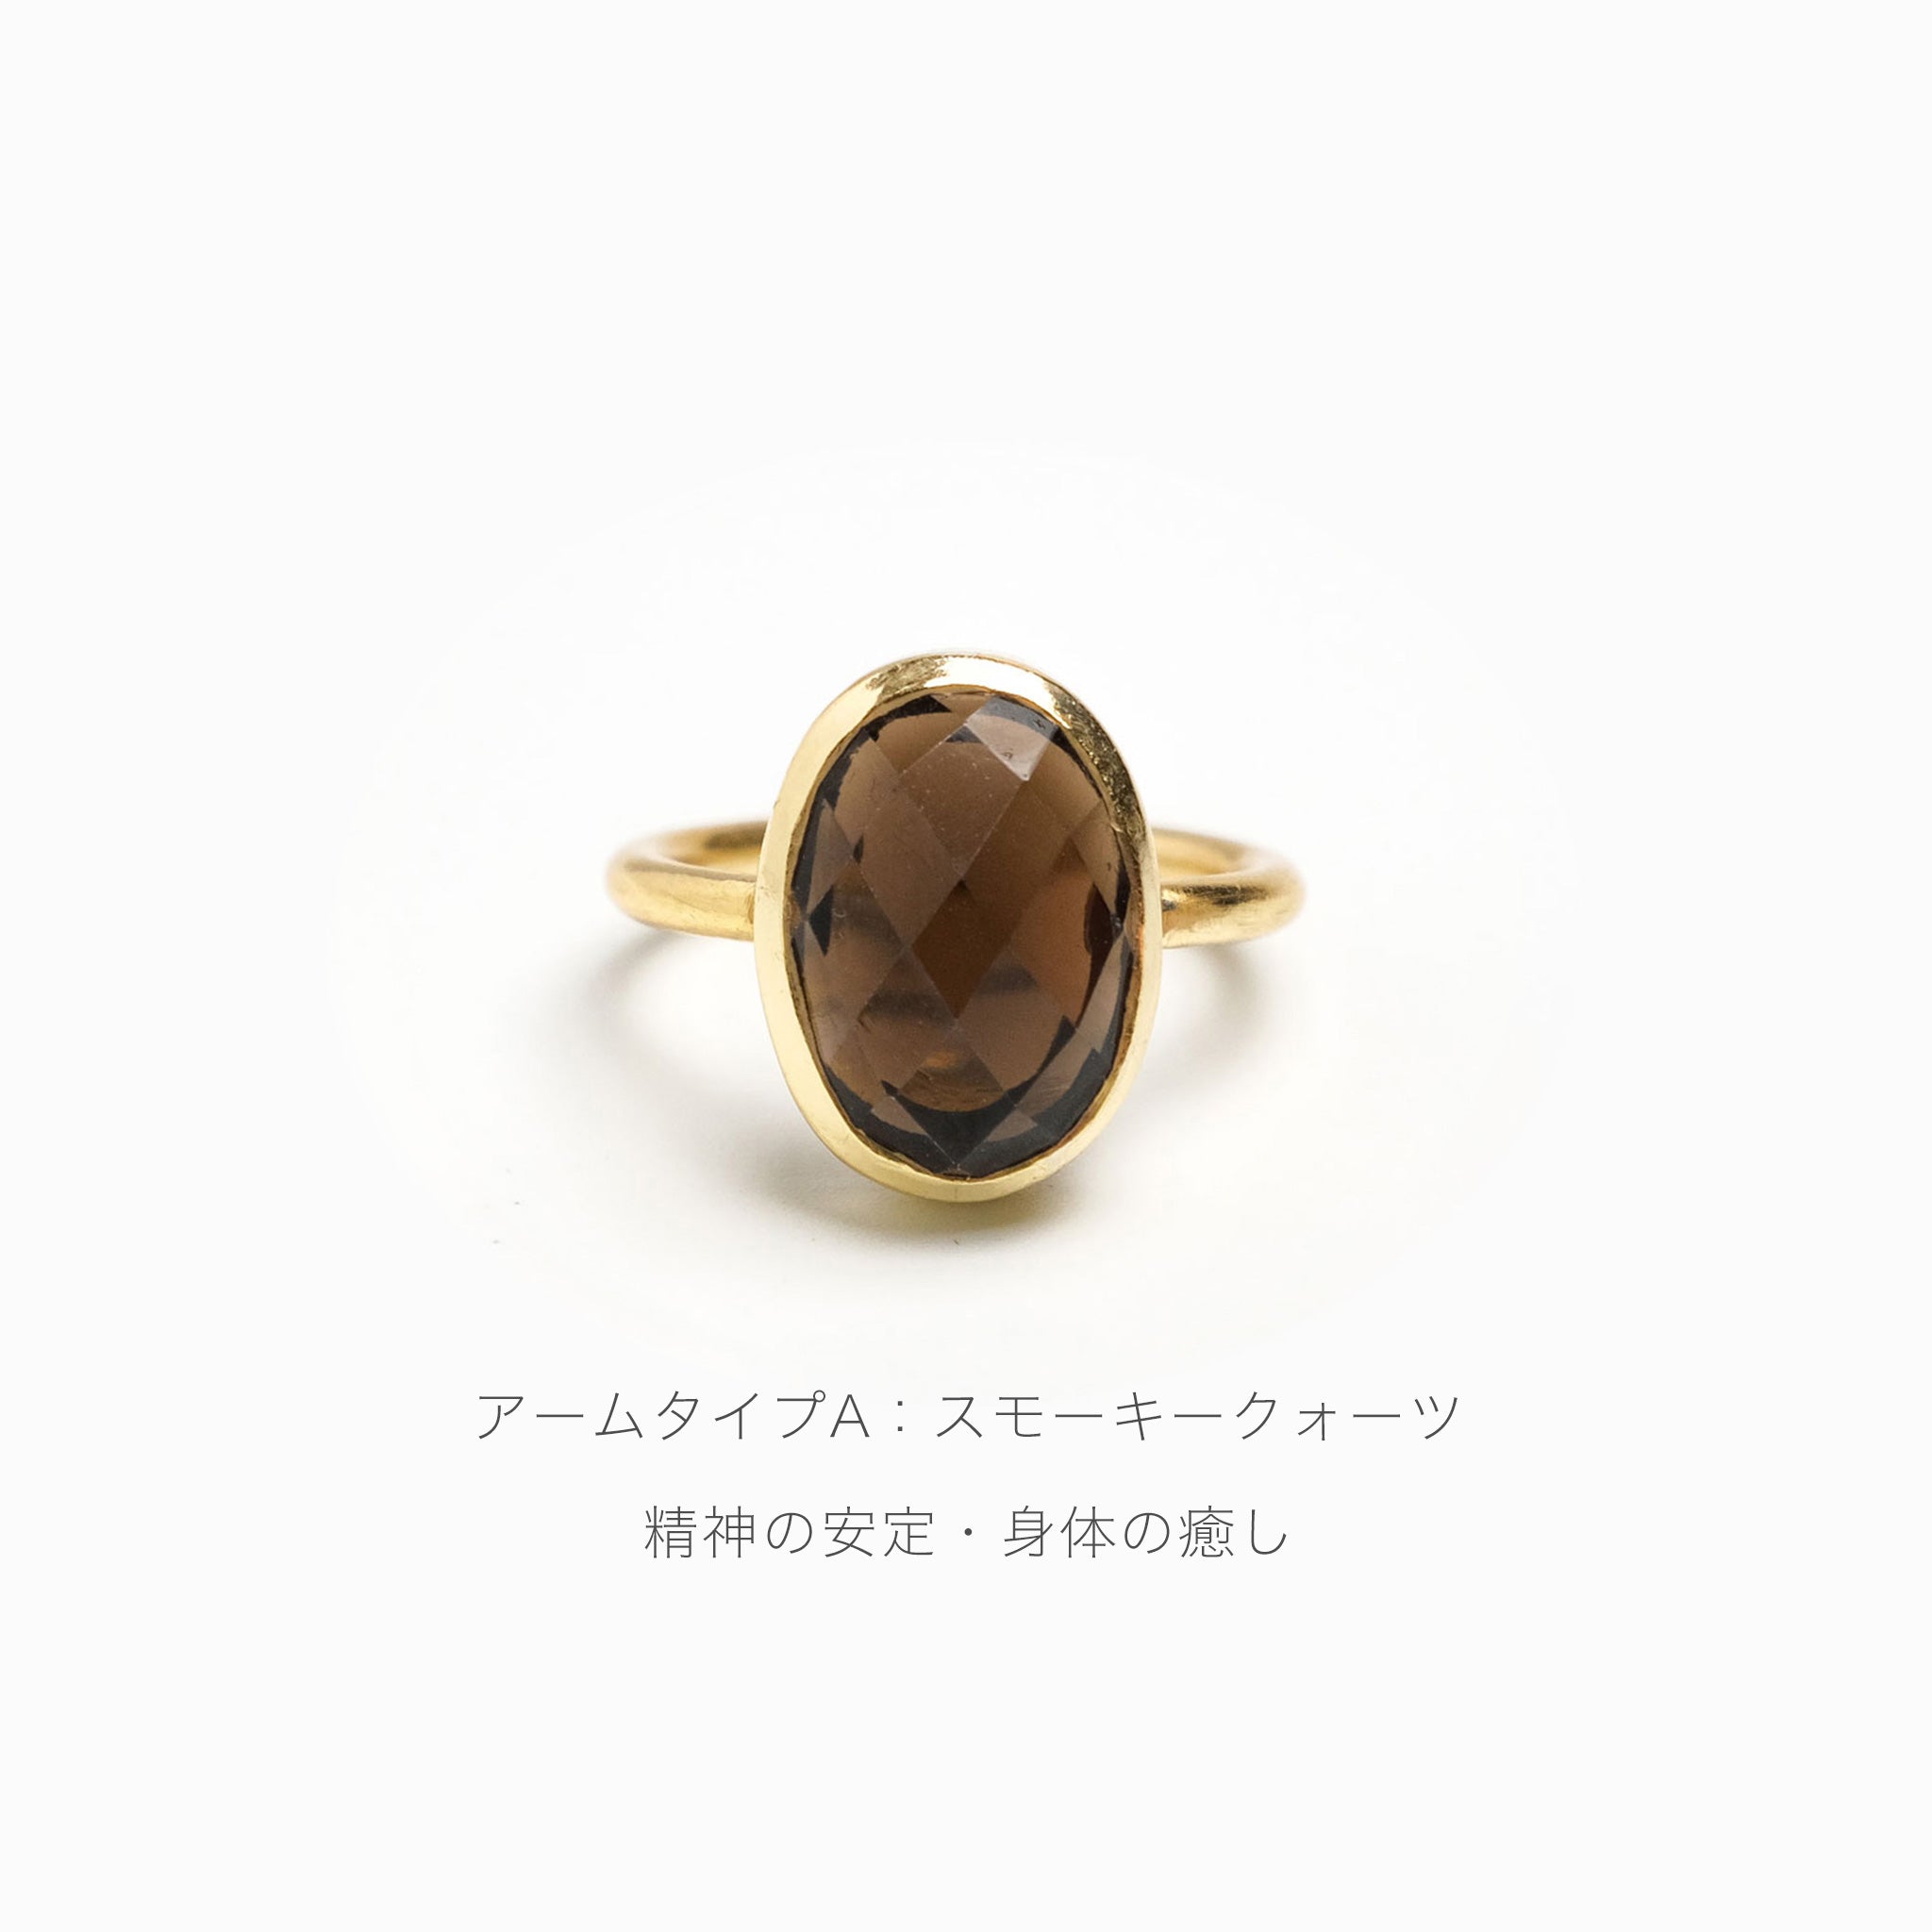 Natural stone ring / Ruta